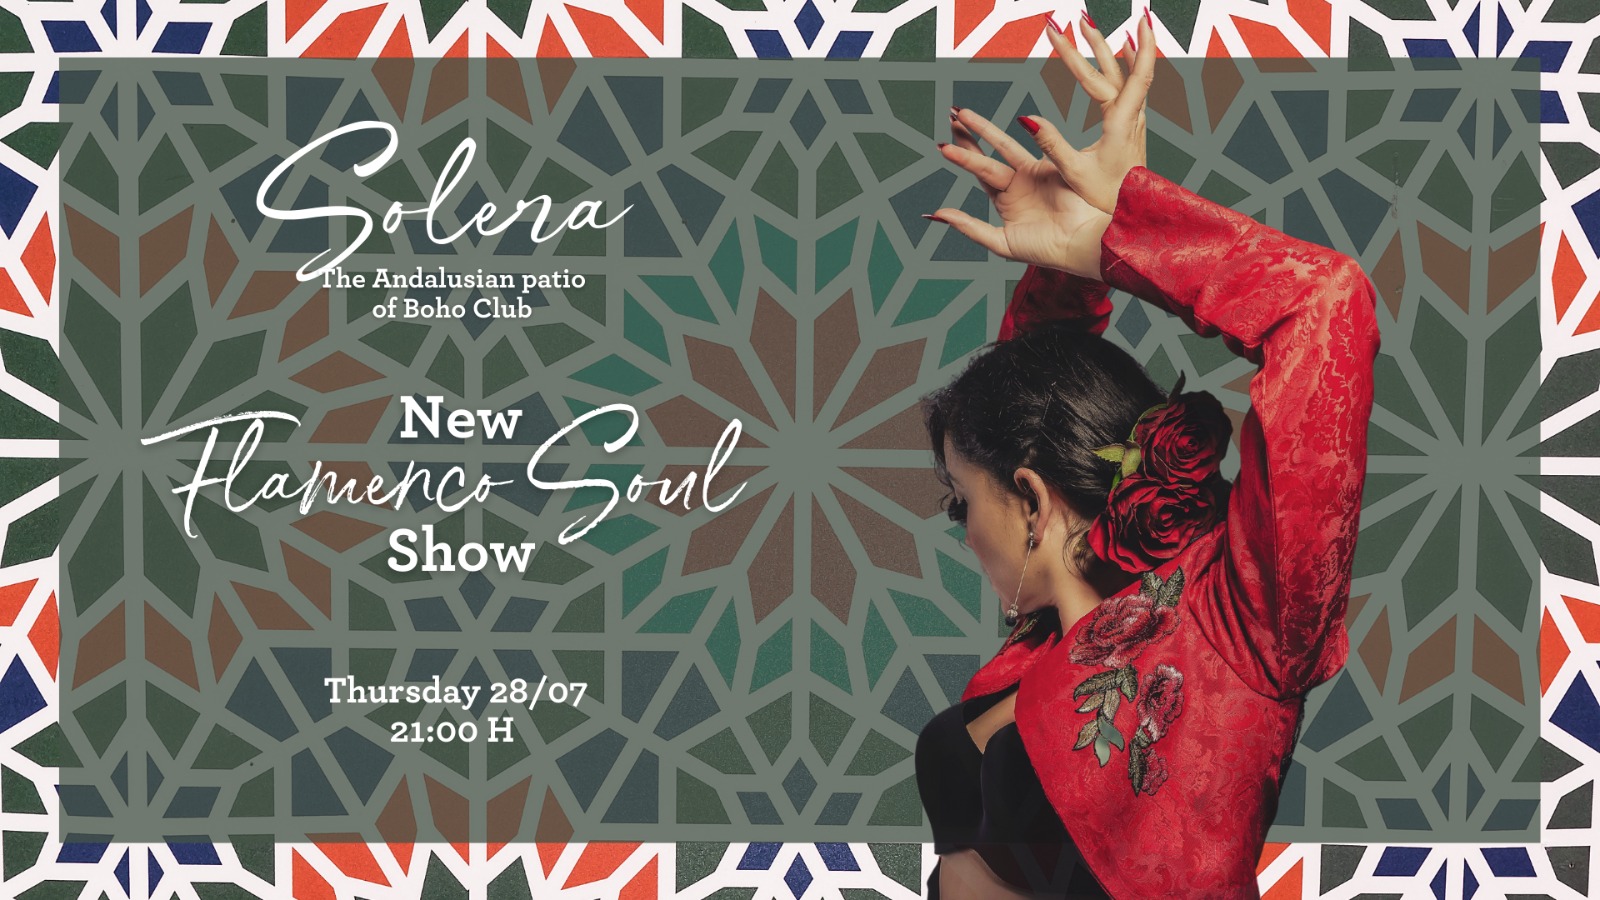 Nuevo espectáculo de Flamenco Soul en Solera, Boho Club